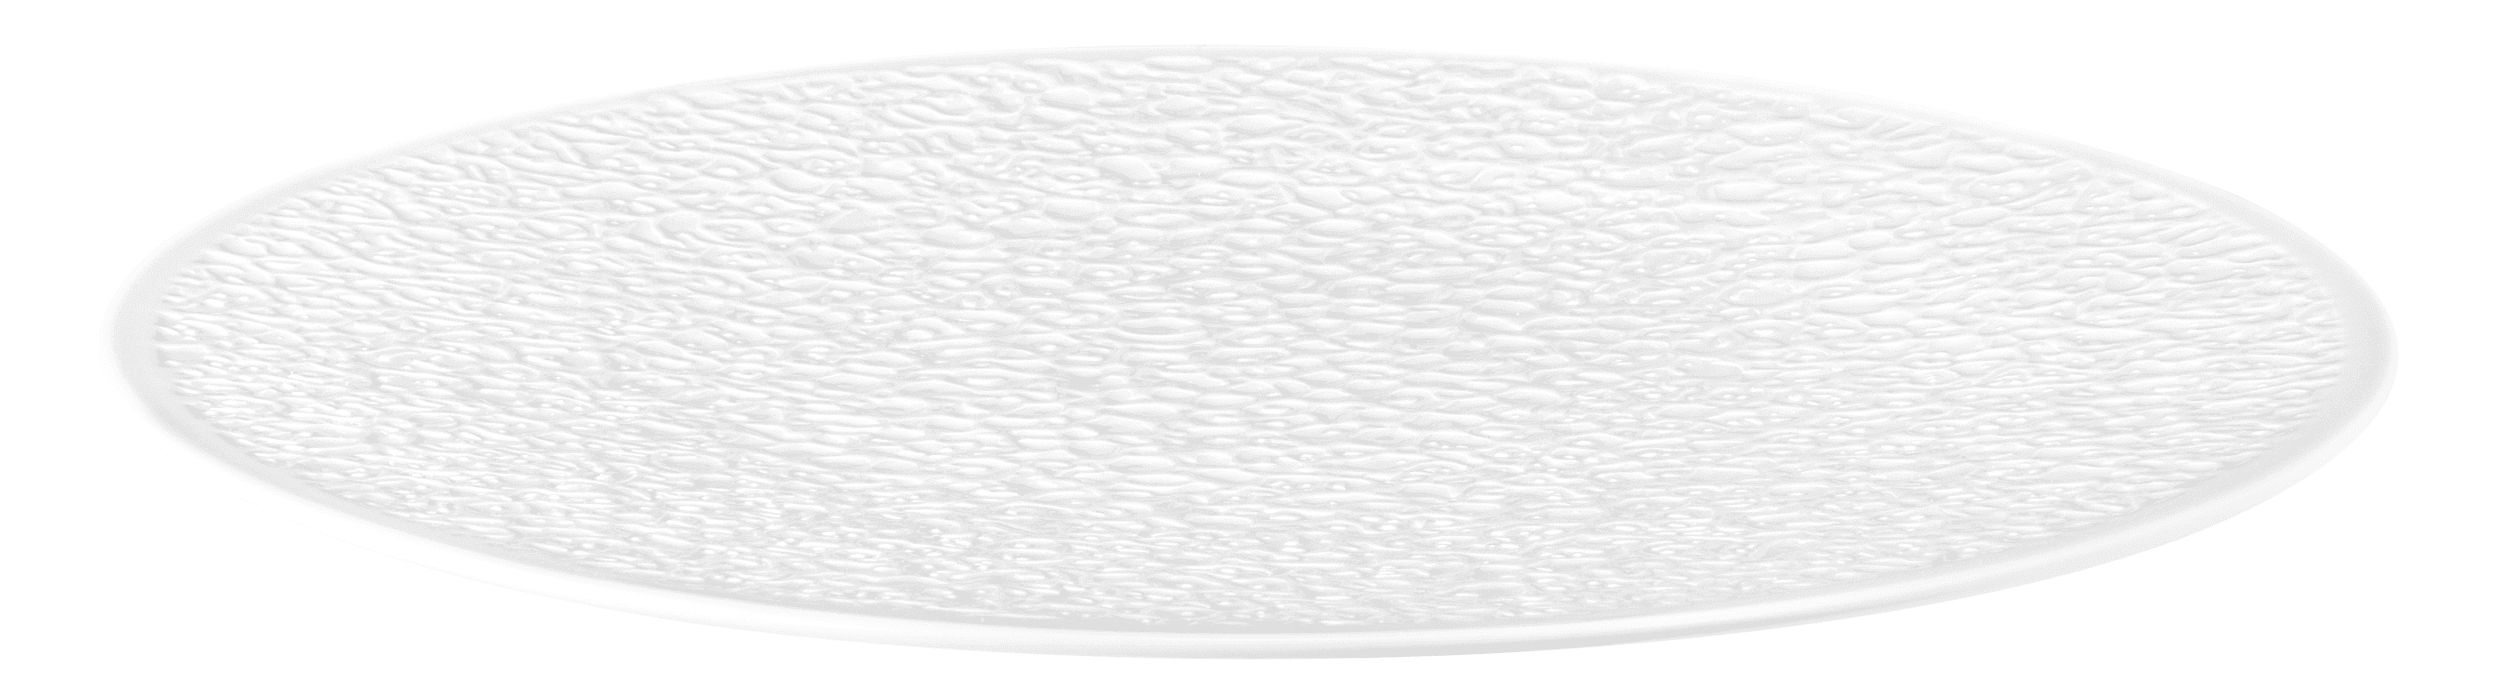 Seltmann Porzellan Nori Weiß Platzteller Vollrelief rund 33 cm